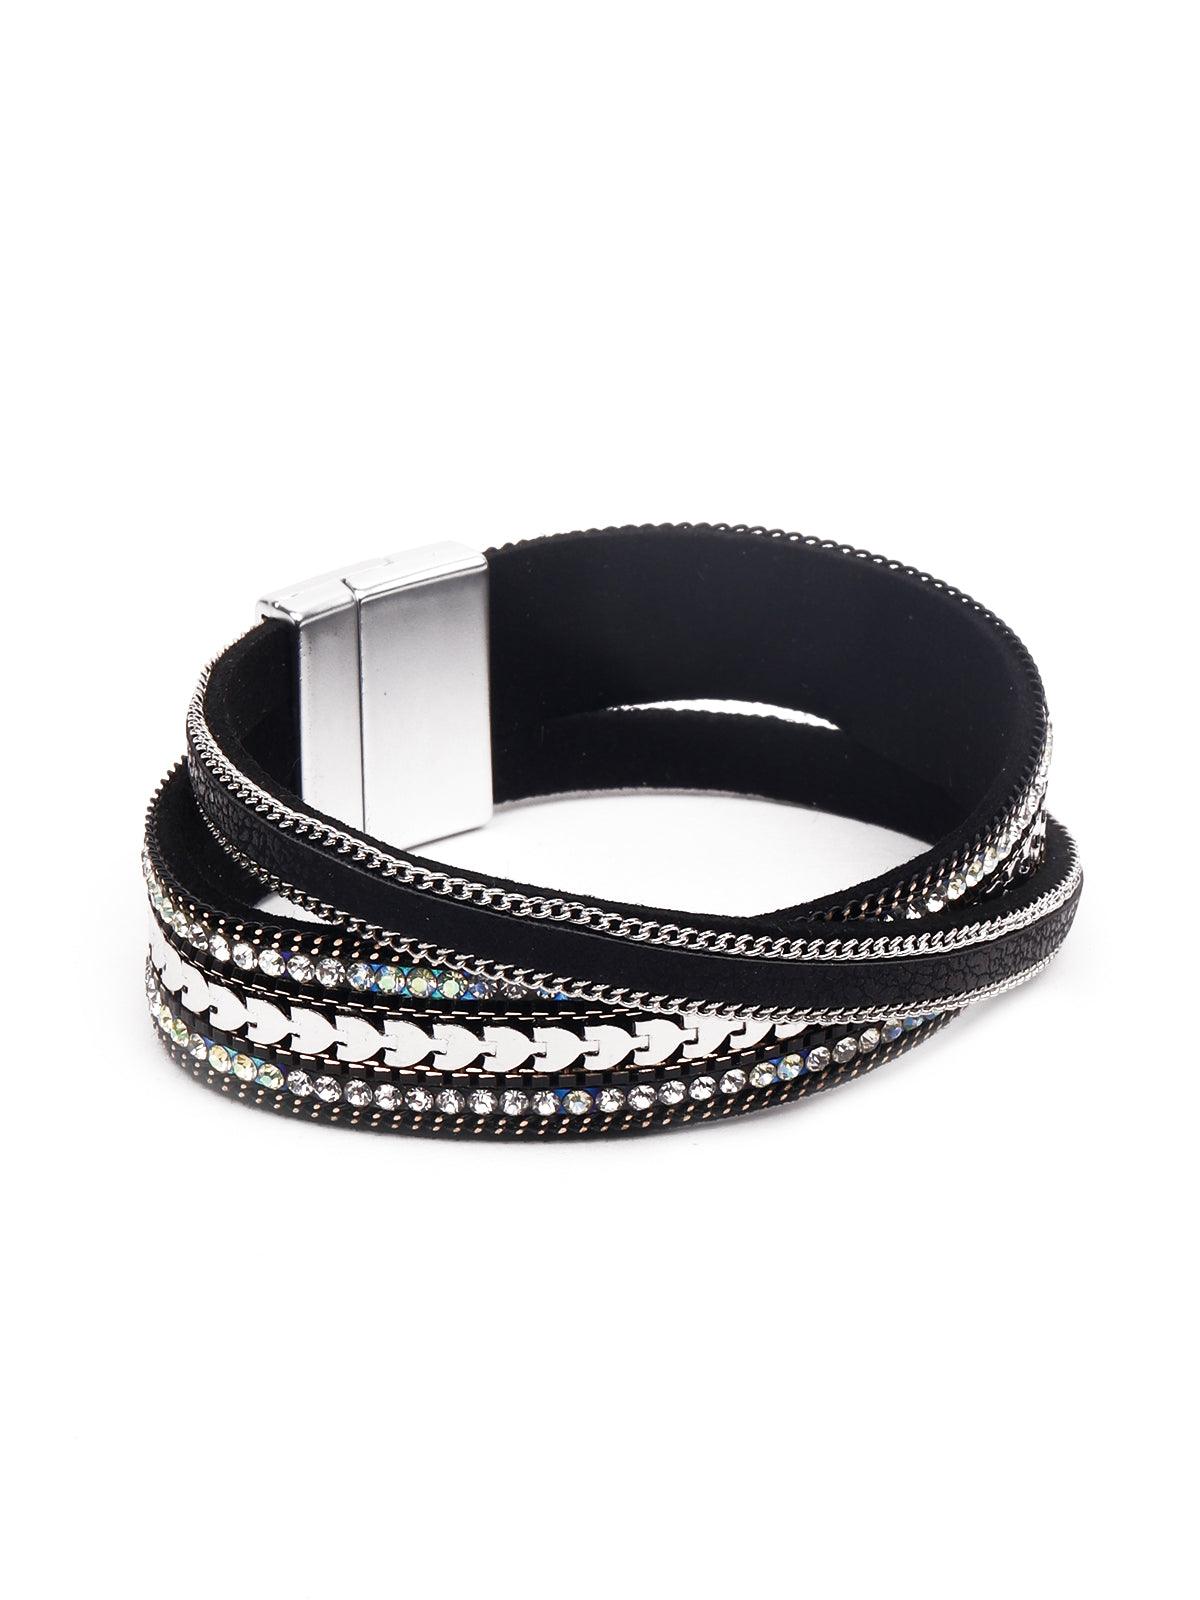 Jet Black Crystal-Studded Bracelet For Women - Odette